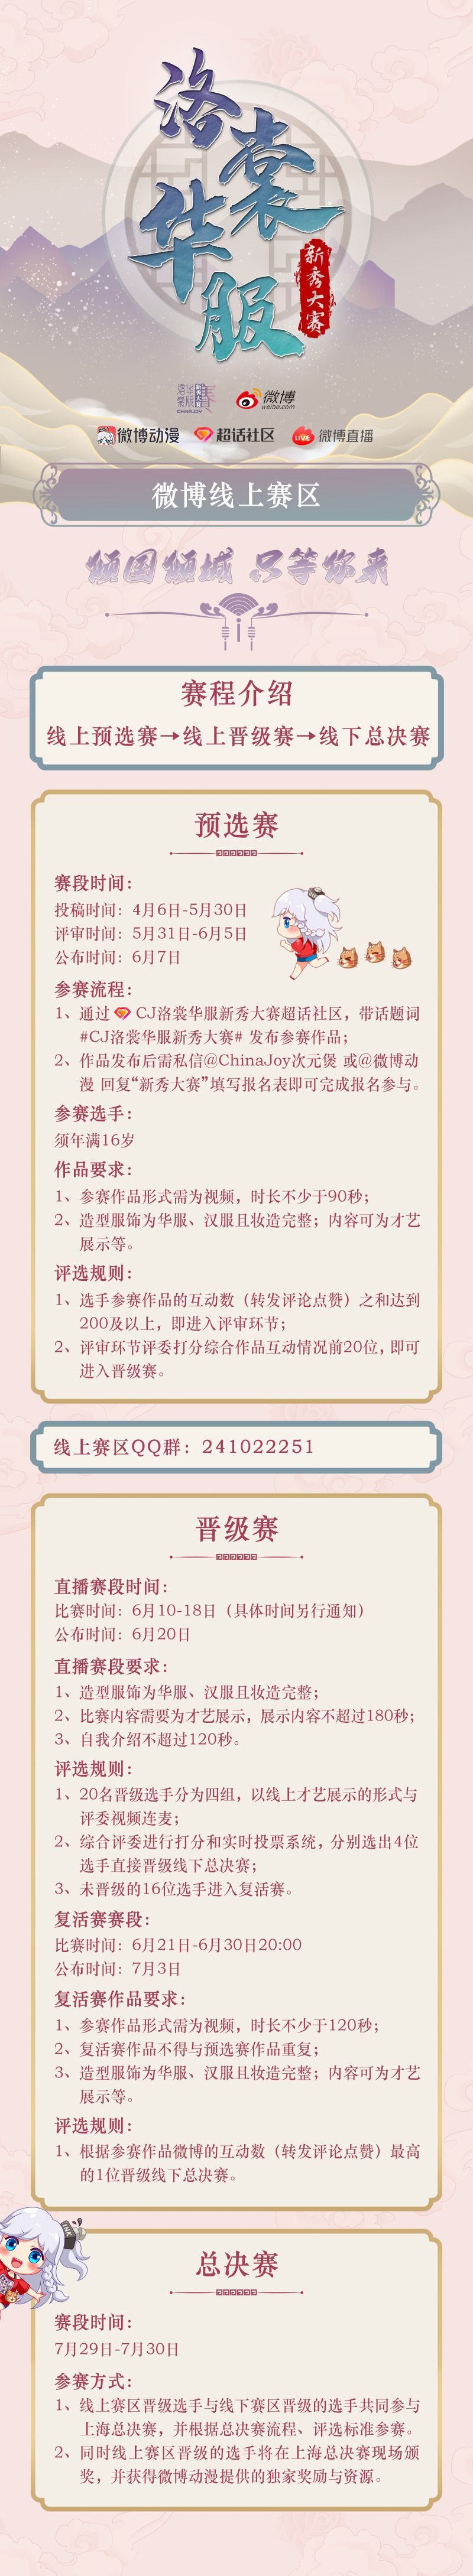 2022年ChinaJoy洛裳華服·新秀大賽 微博線上賽區正式開賽